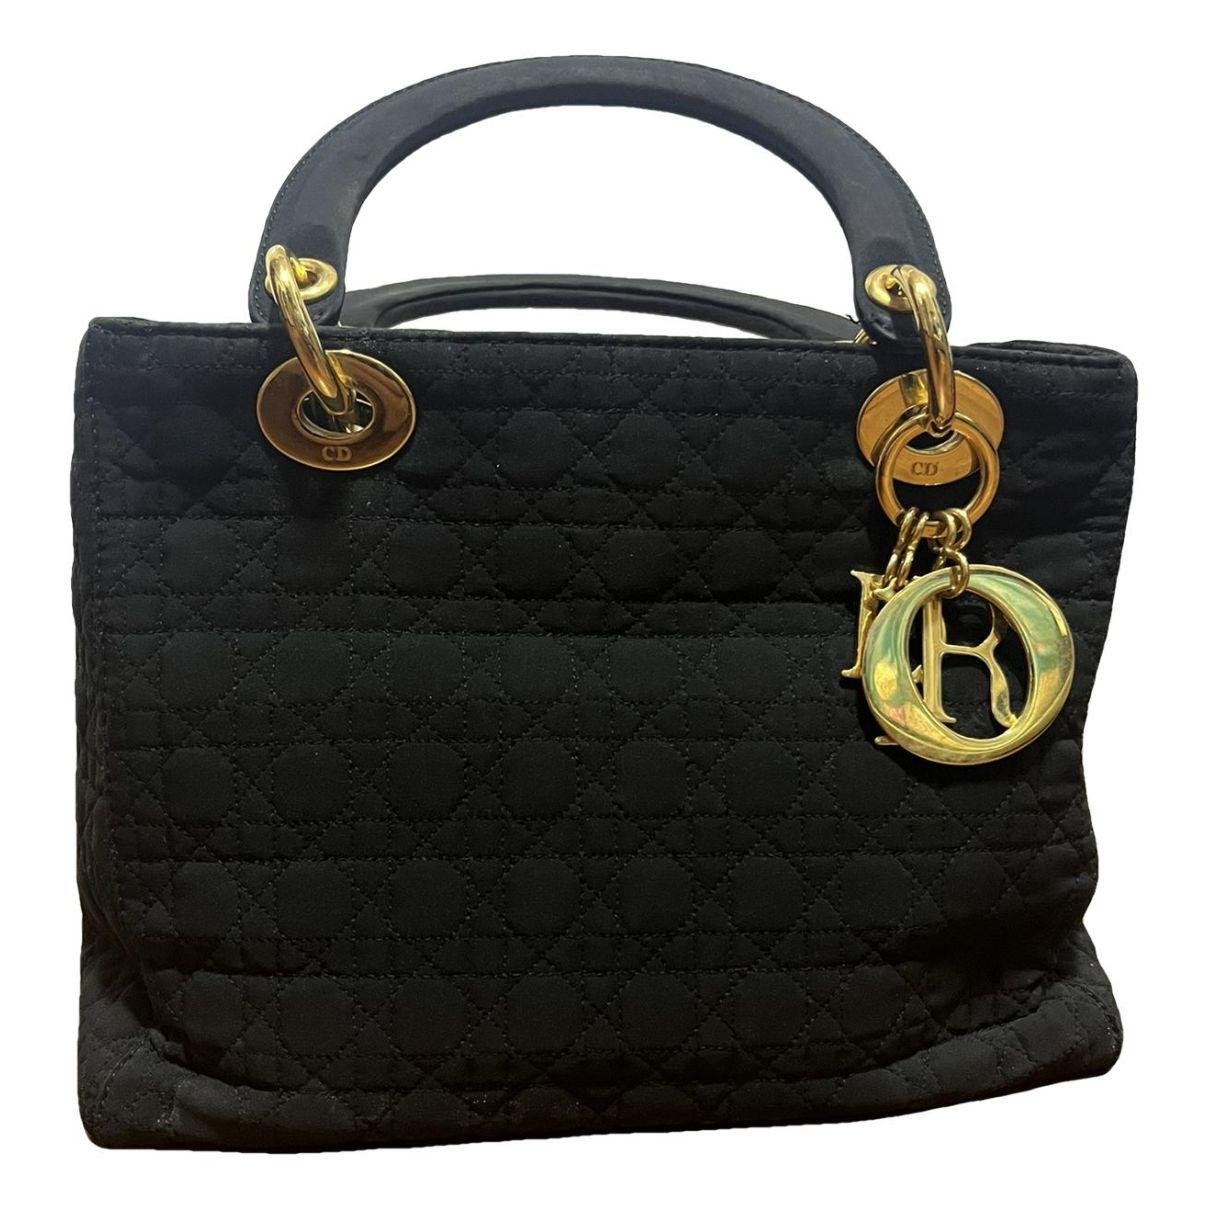 Lady Dior cloth handbag (Lady Dior) by DIOR